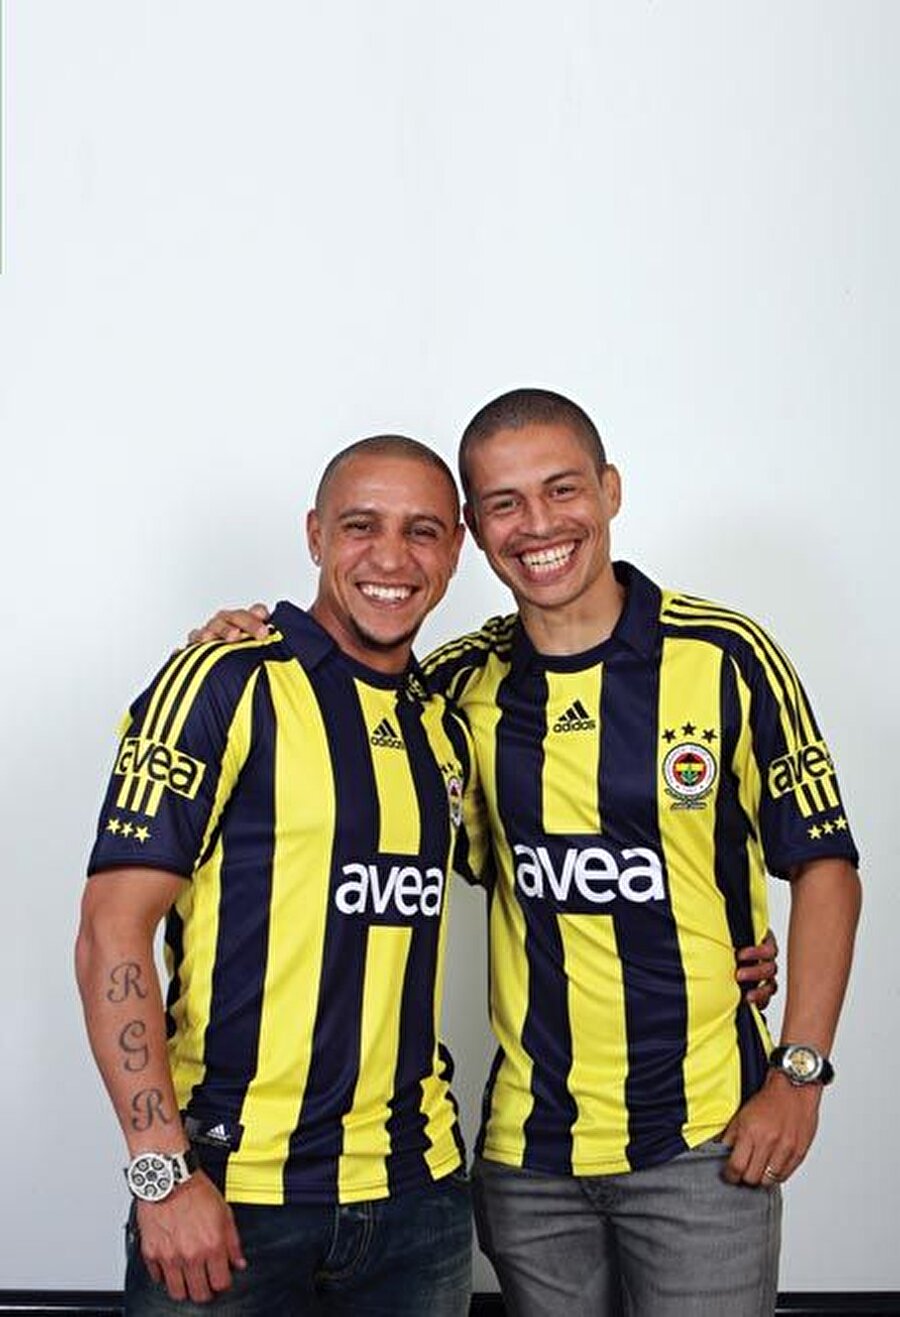 Carlos'tan itiraf
2007'de Fenerbahçe'ye transfer olan Roberto Carlos, Alex için şu ifadeleri kullanıyor: Alex'le yarışmanın yolunu bulamadım. O tam bir idoldü. Faul atışları onun işiydi.